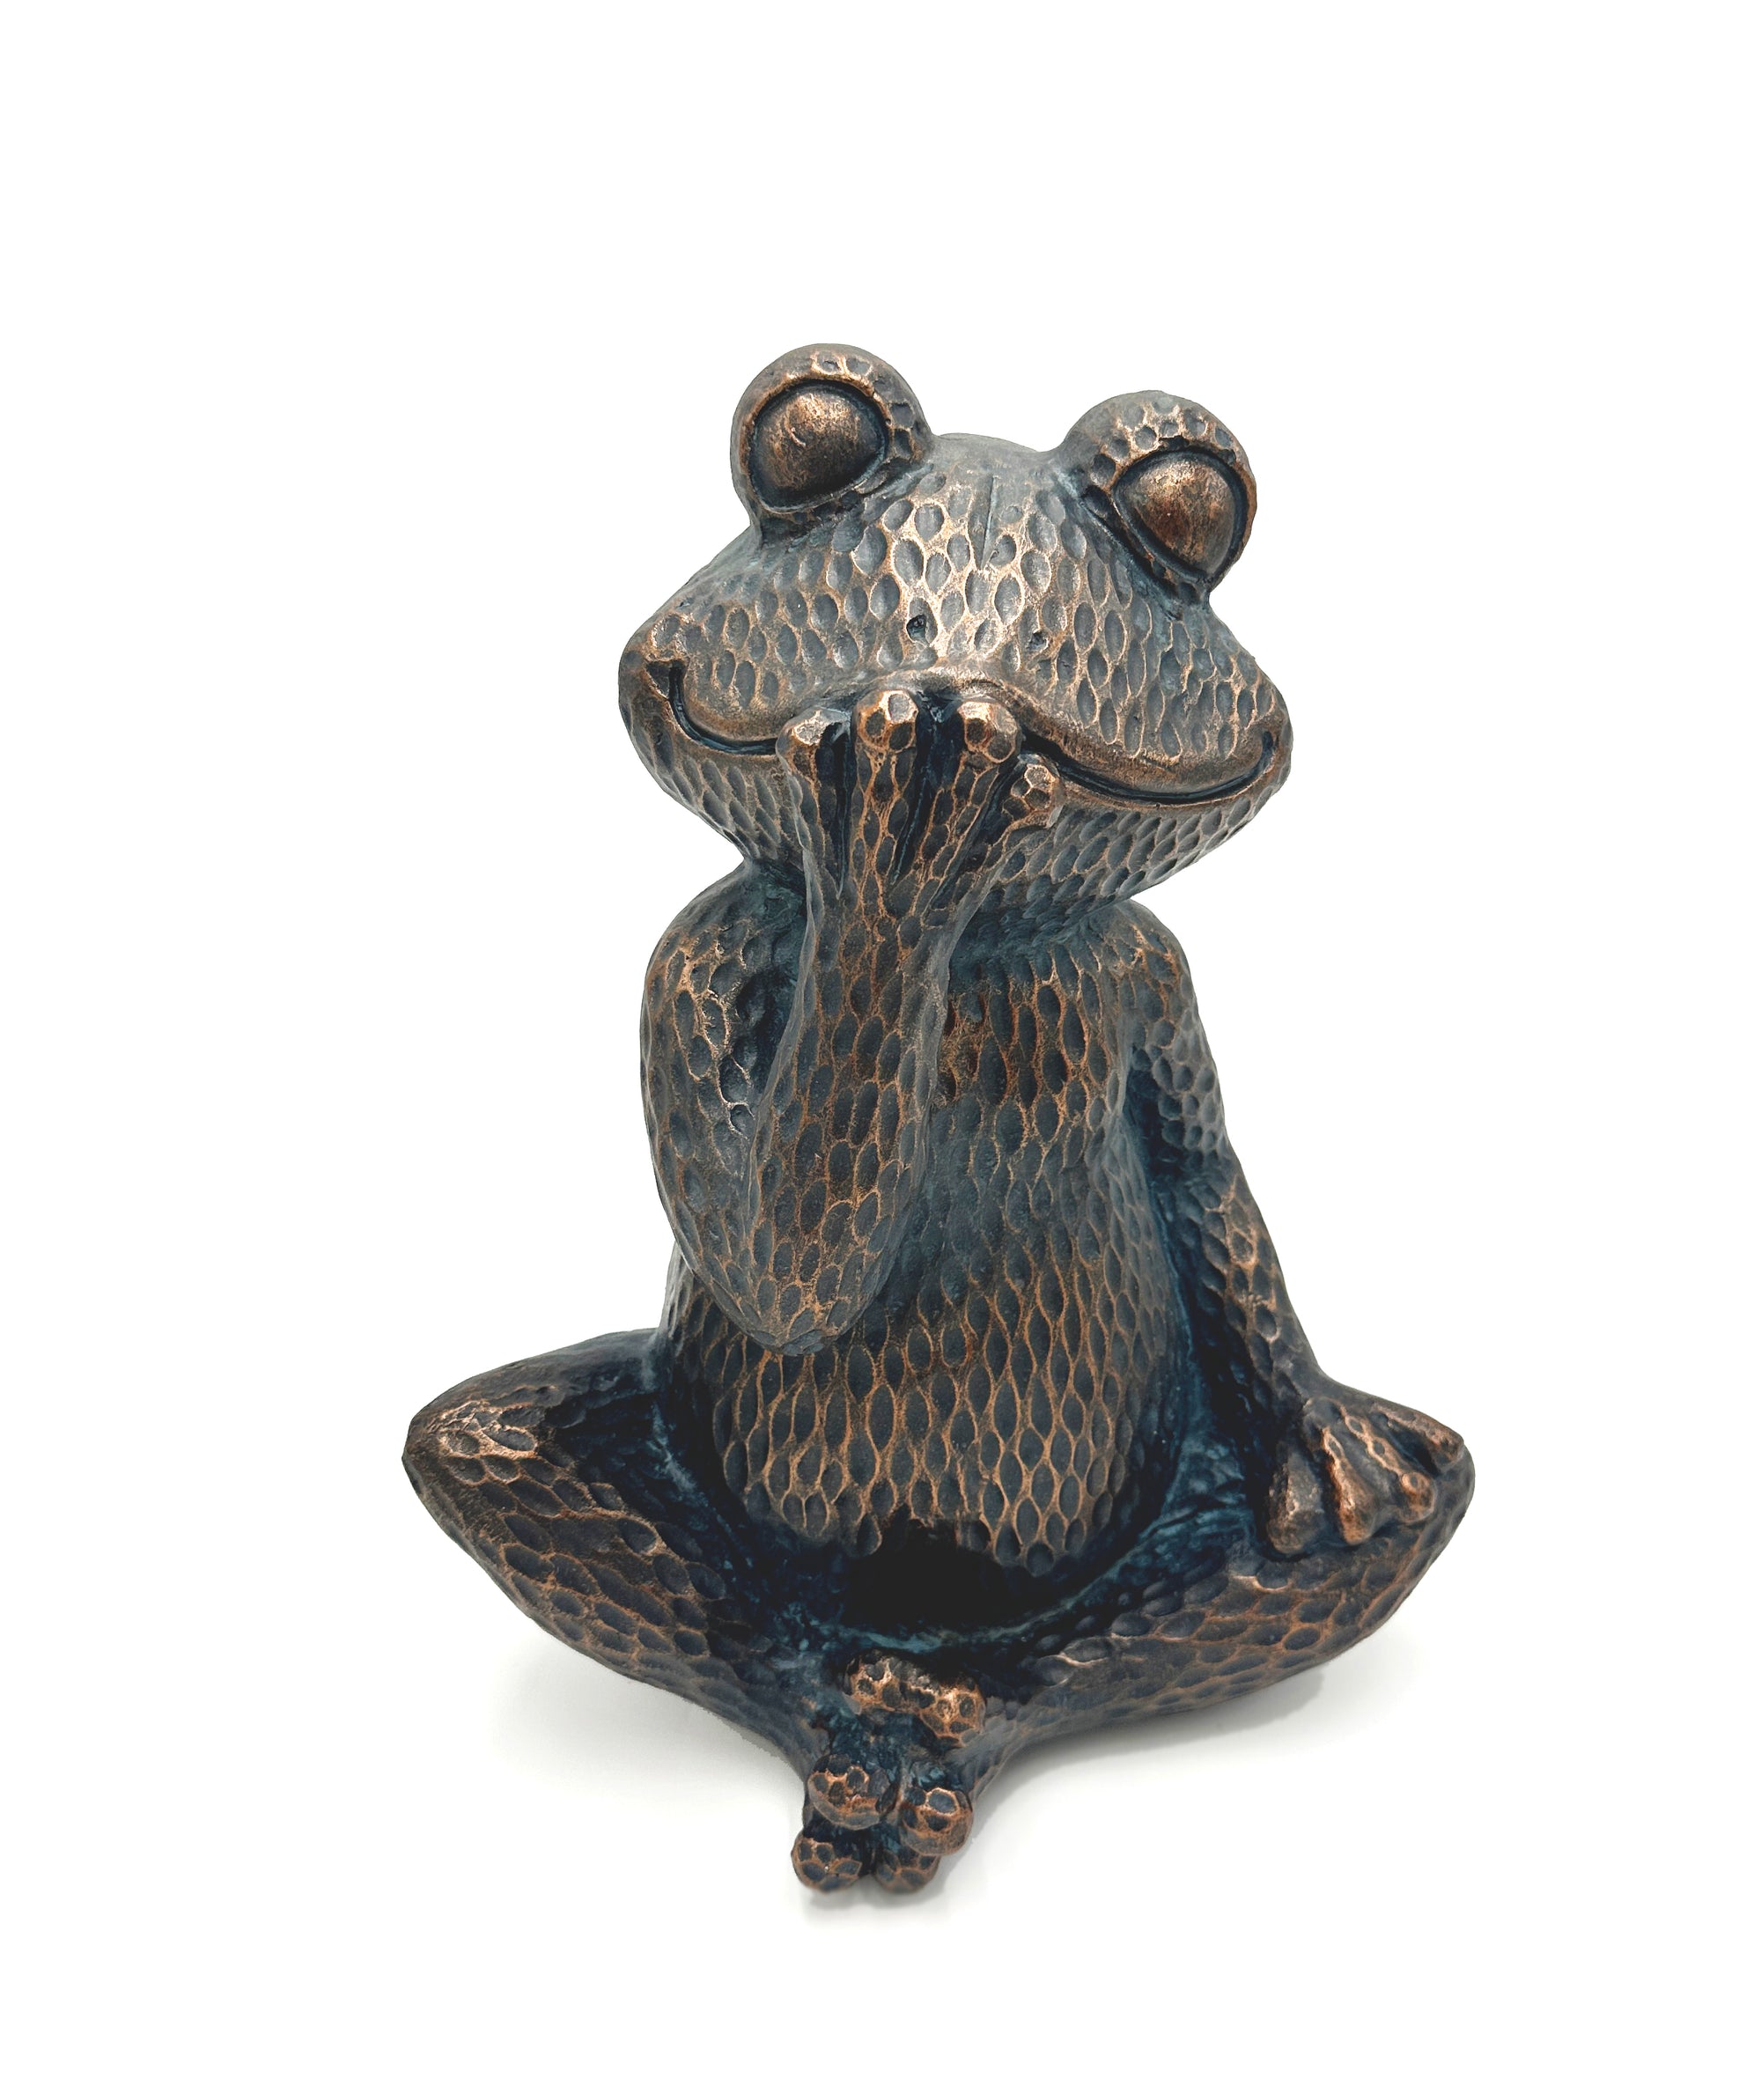 Frog Decor - Sitting Up